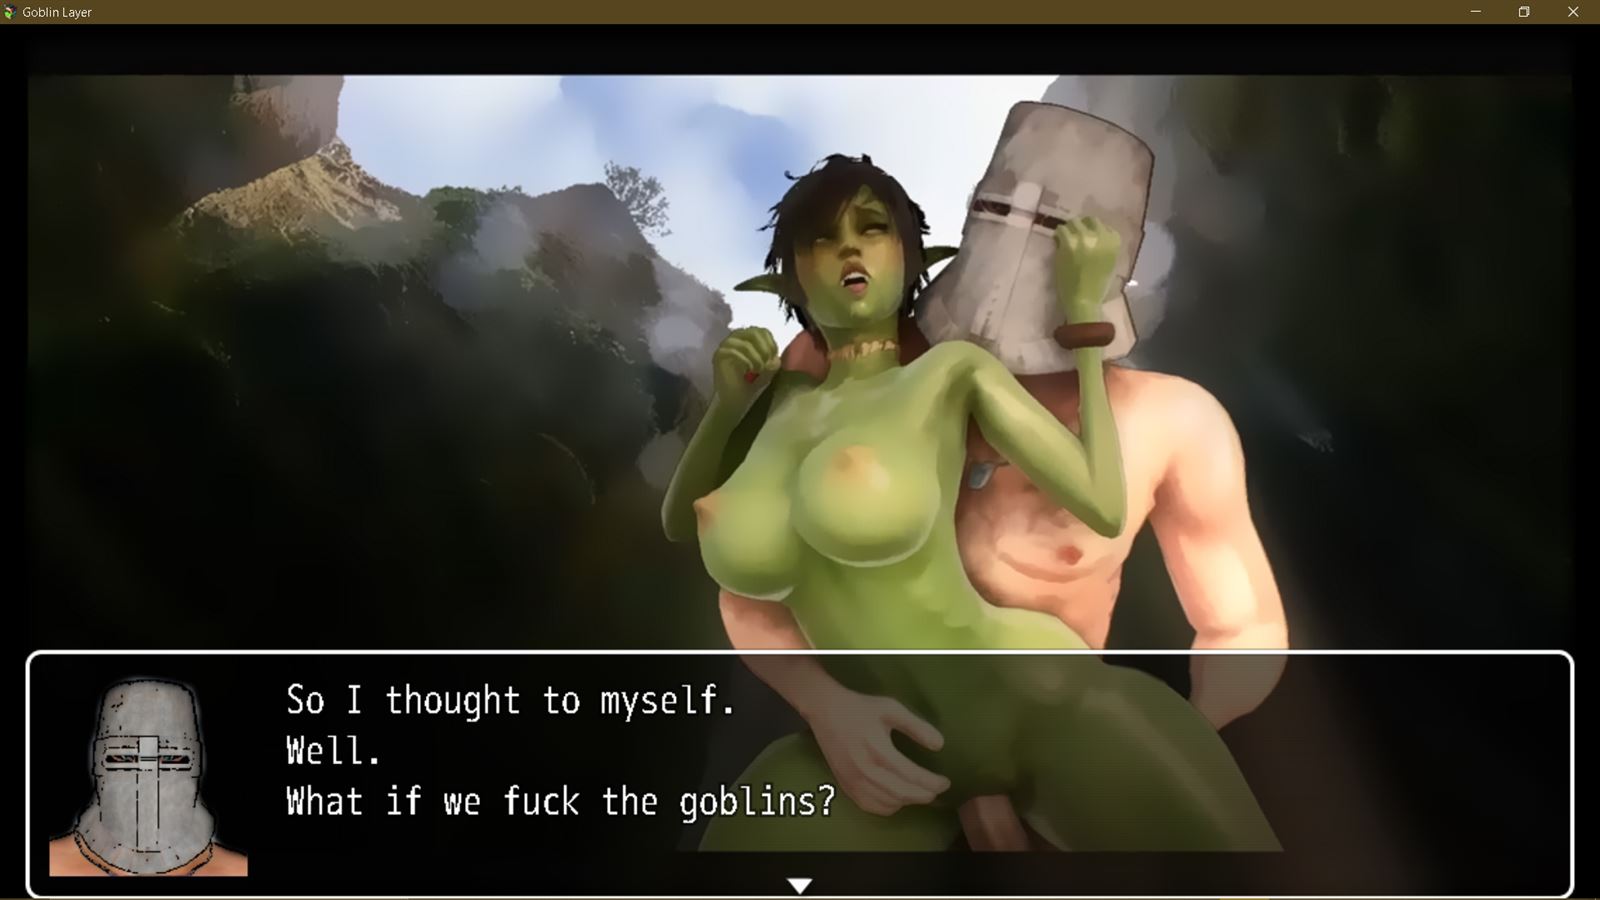 Goblin layer porn game